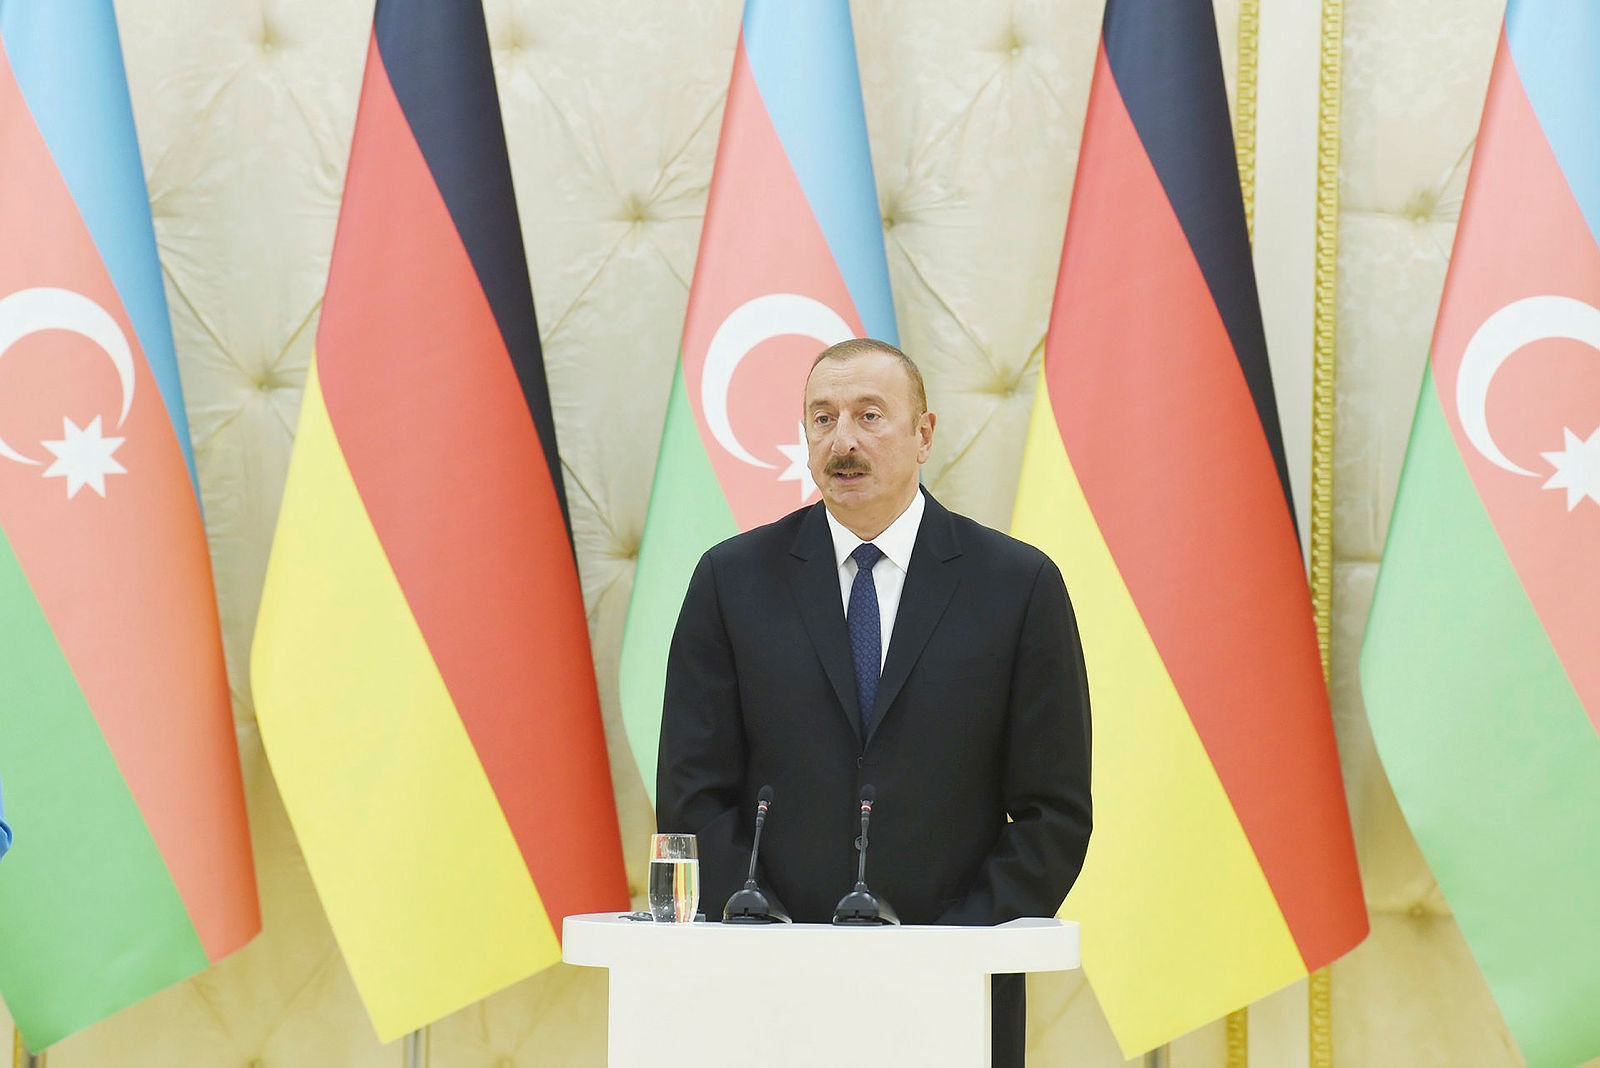 İlham Aliyev ile Angela Merkel’in görüşmesinde dikkat çeken konu